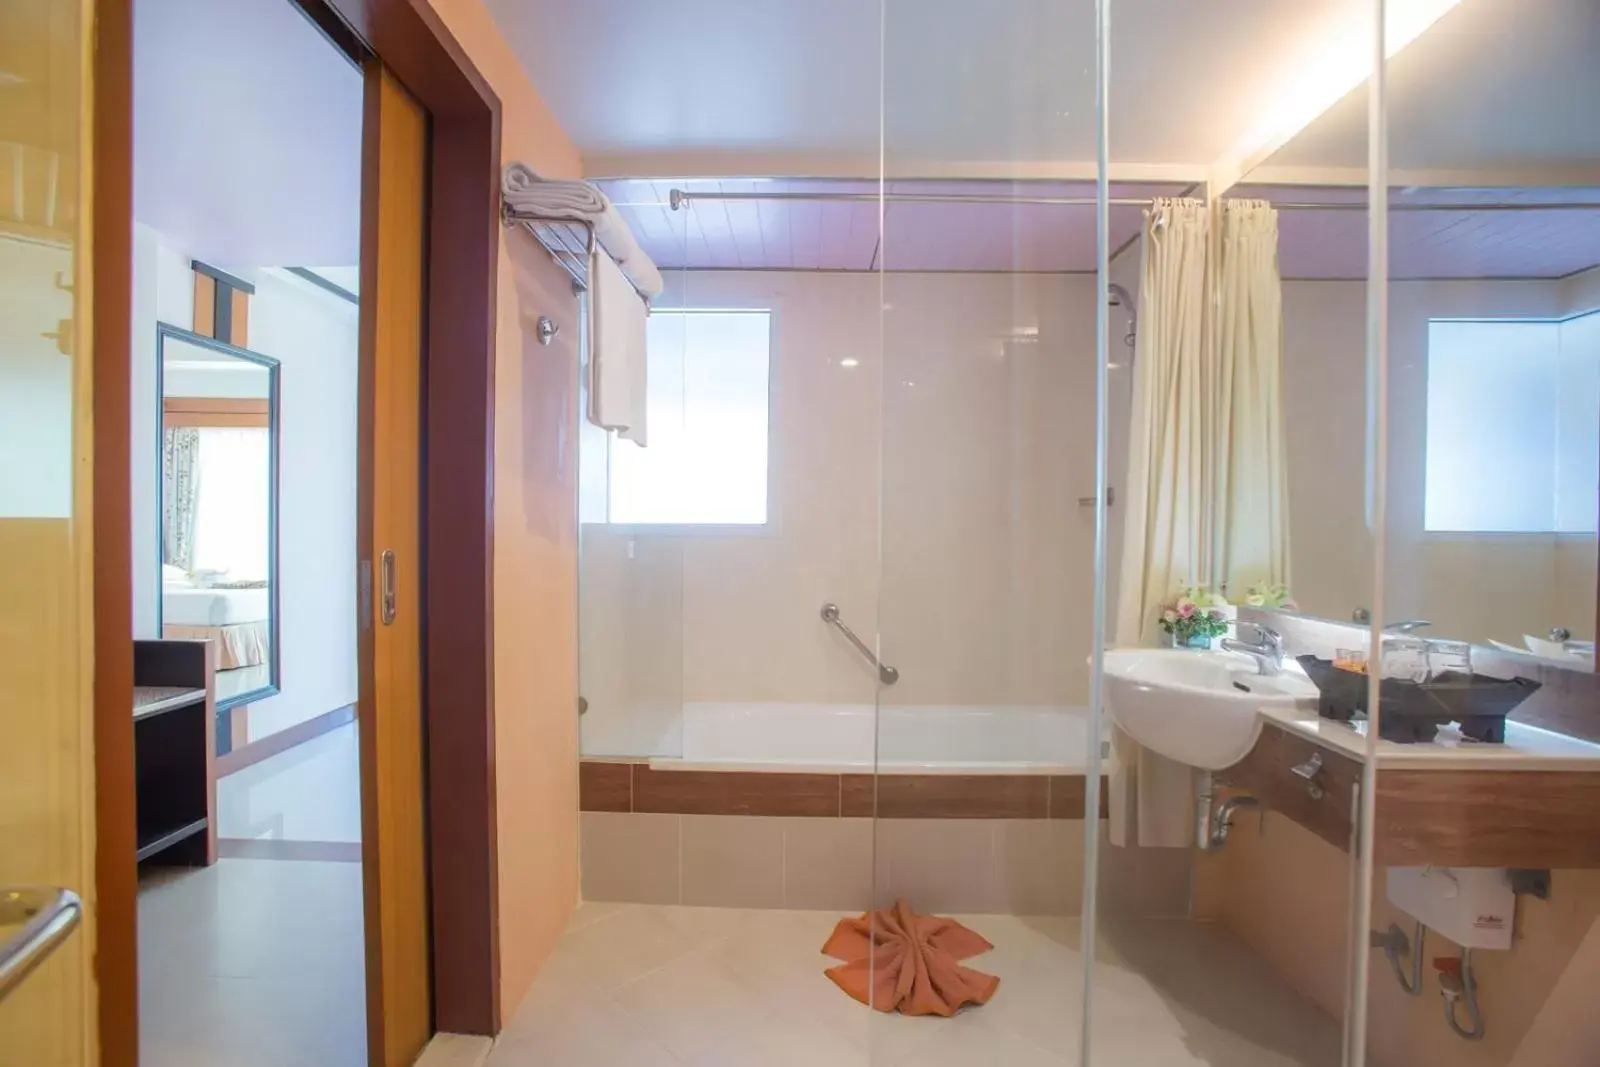 Toilet, Bathroom in Asia Cha-am Hotel